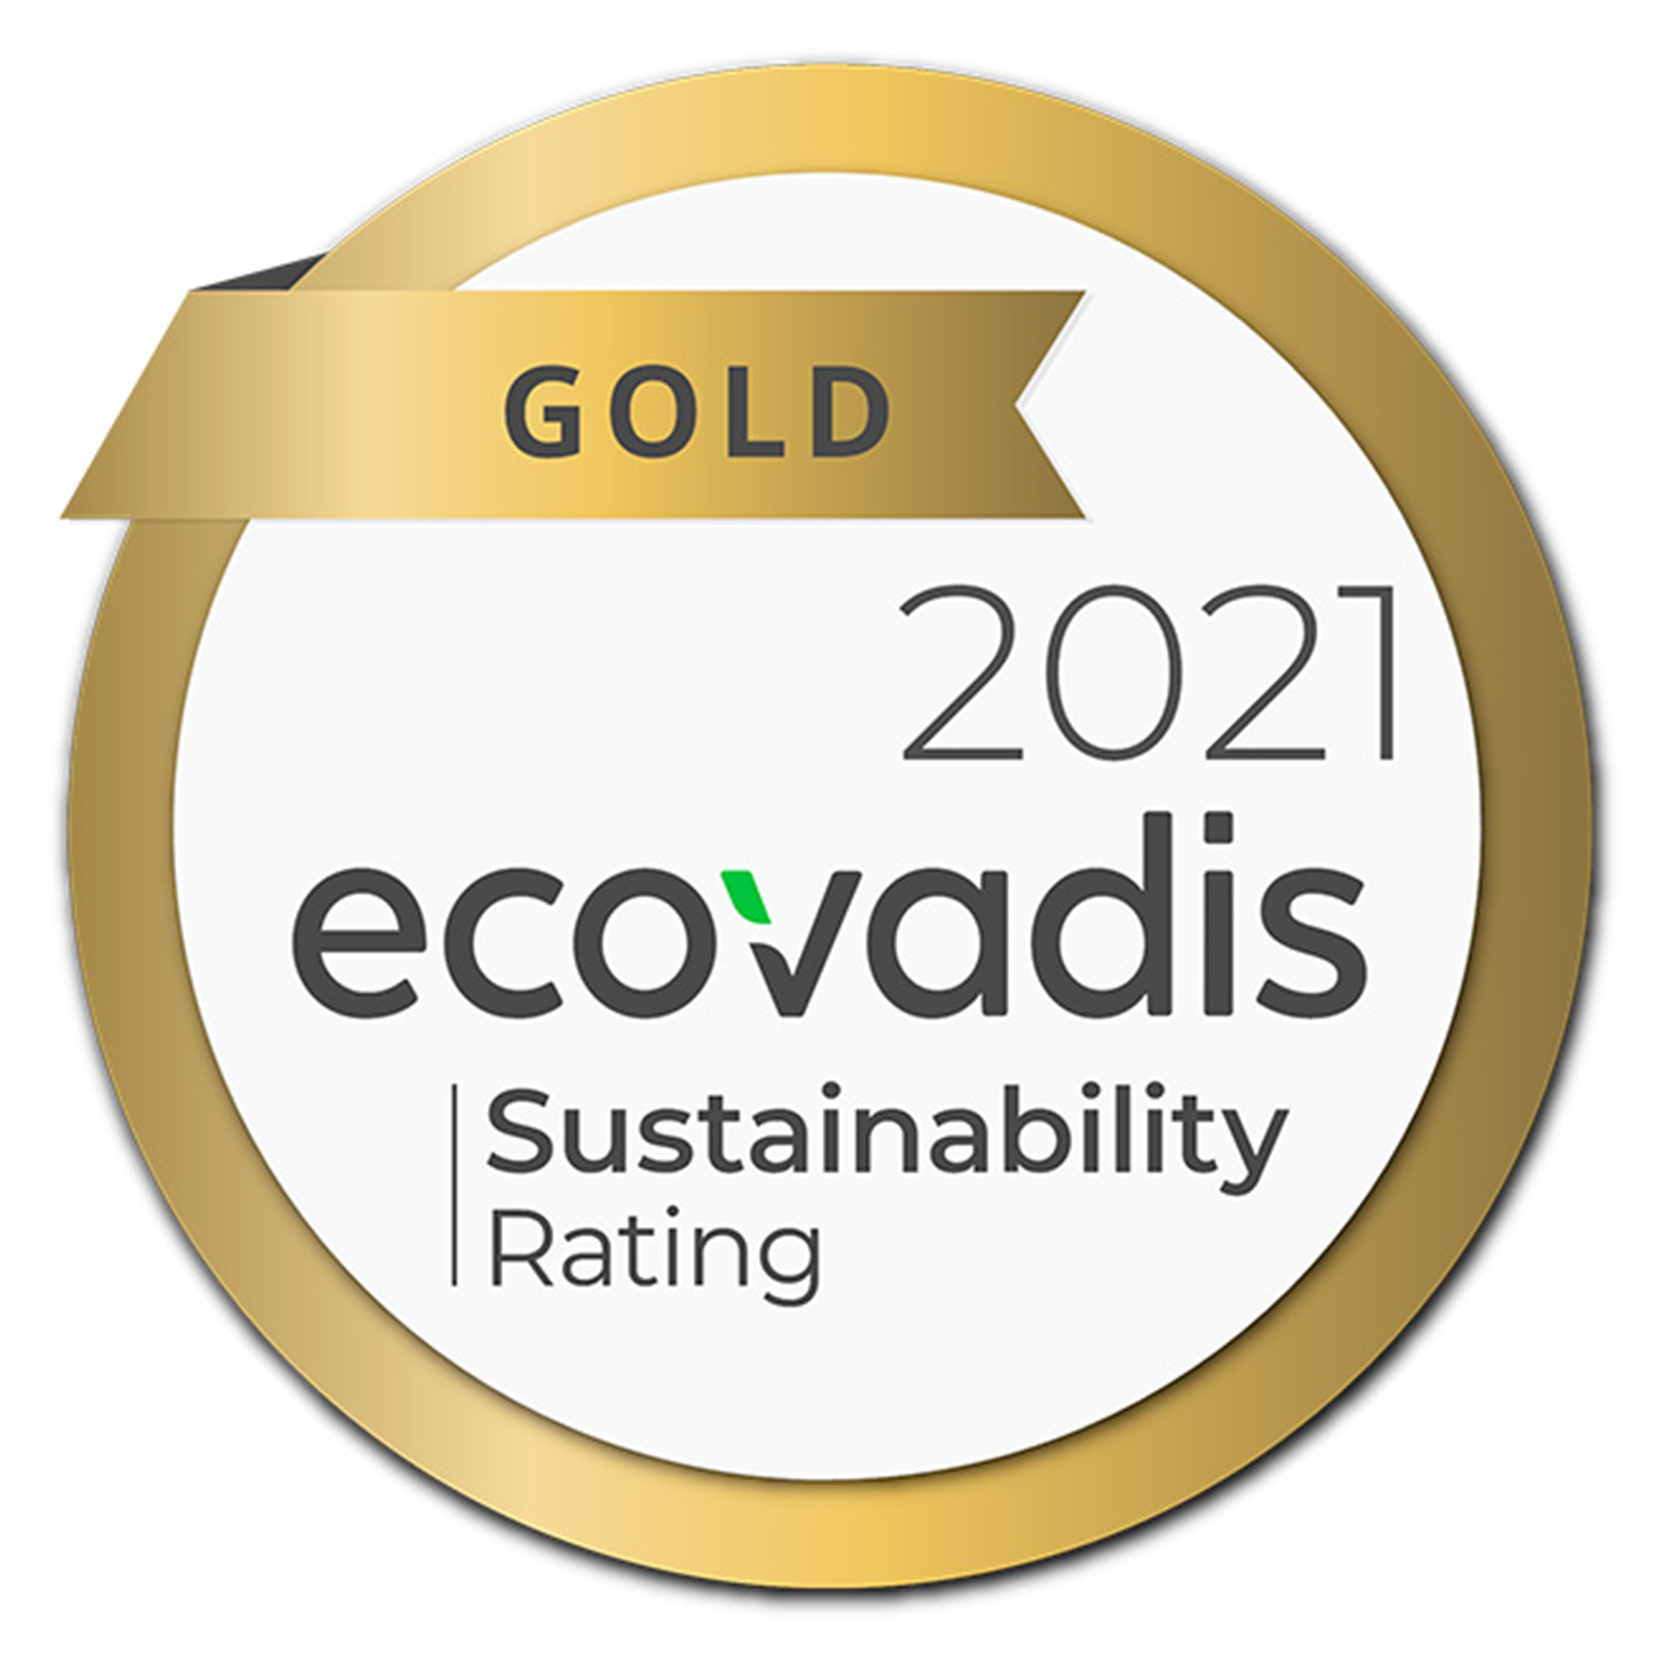 L&L Products s'est vu décerner une médaille d'OR par EcoVadis en 2021 en reconnaissance de son engagement continu en matière de durabilité. Cela place L&L Products dans le top 5 % des entreprises de son secteur. Grâce à l'engagement de nos employés et de notre direction, nous avons augmenté notre score dans toutes les catégories évaluées : Environnement, Droits de l'homme et travail, Éthique, et Achats durables.